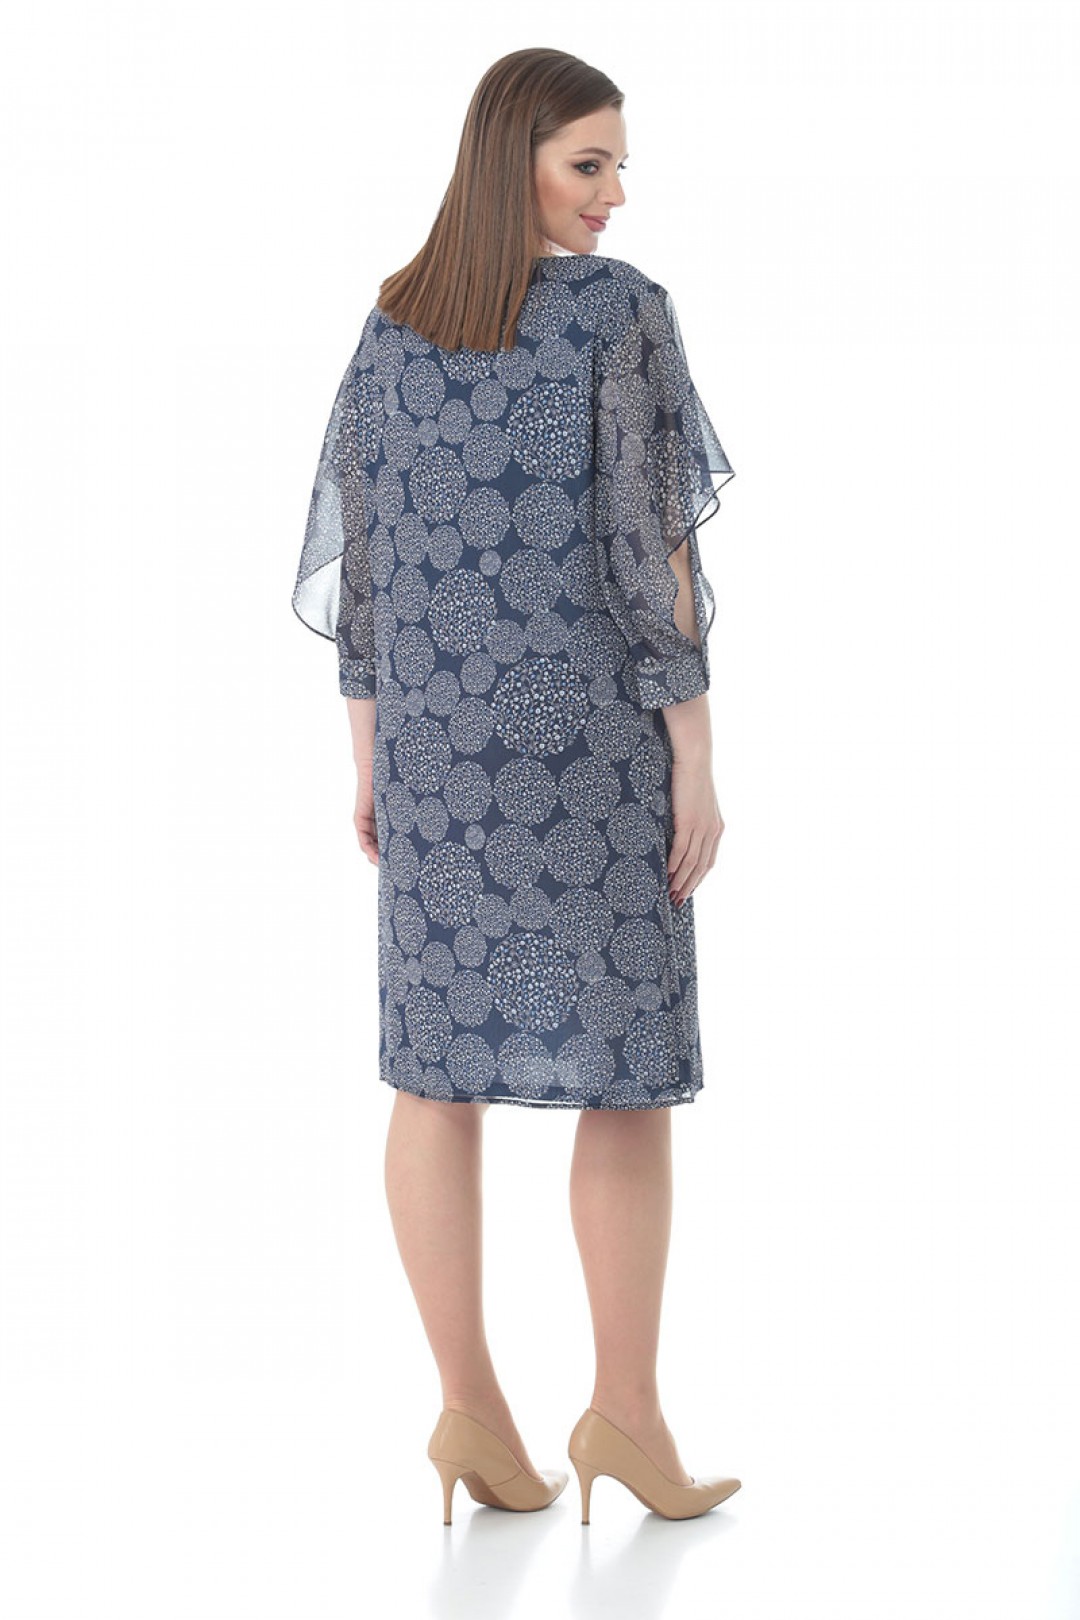 Платье Карина Делюкс В-398 тёмно-синий